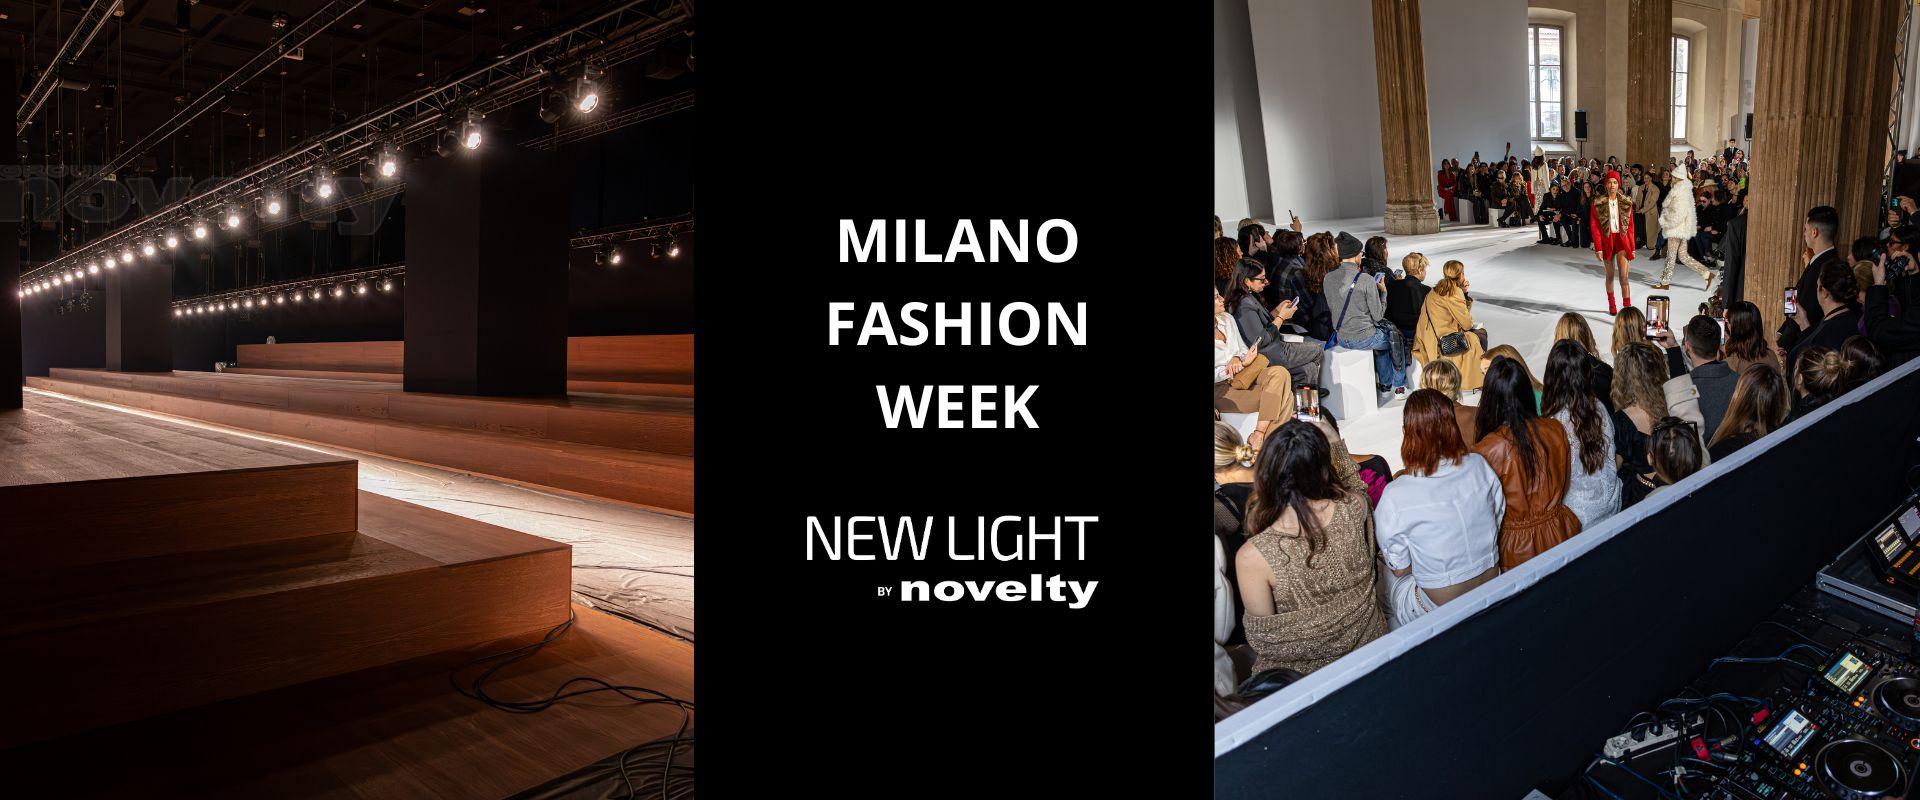 Visuel Newlight by Novelty pour la Fashion Week Milan 